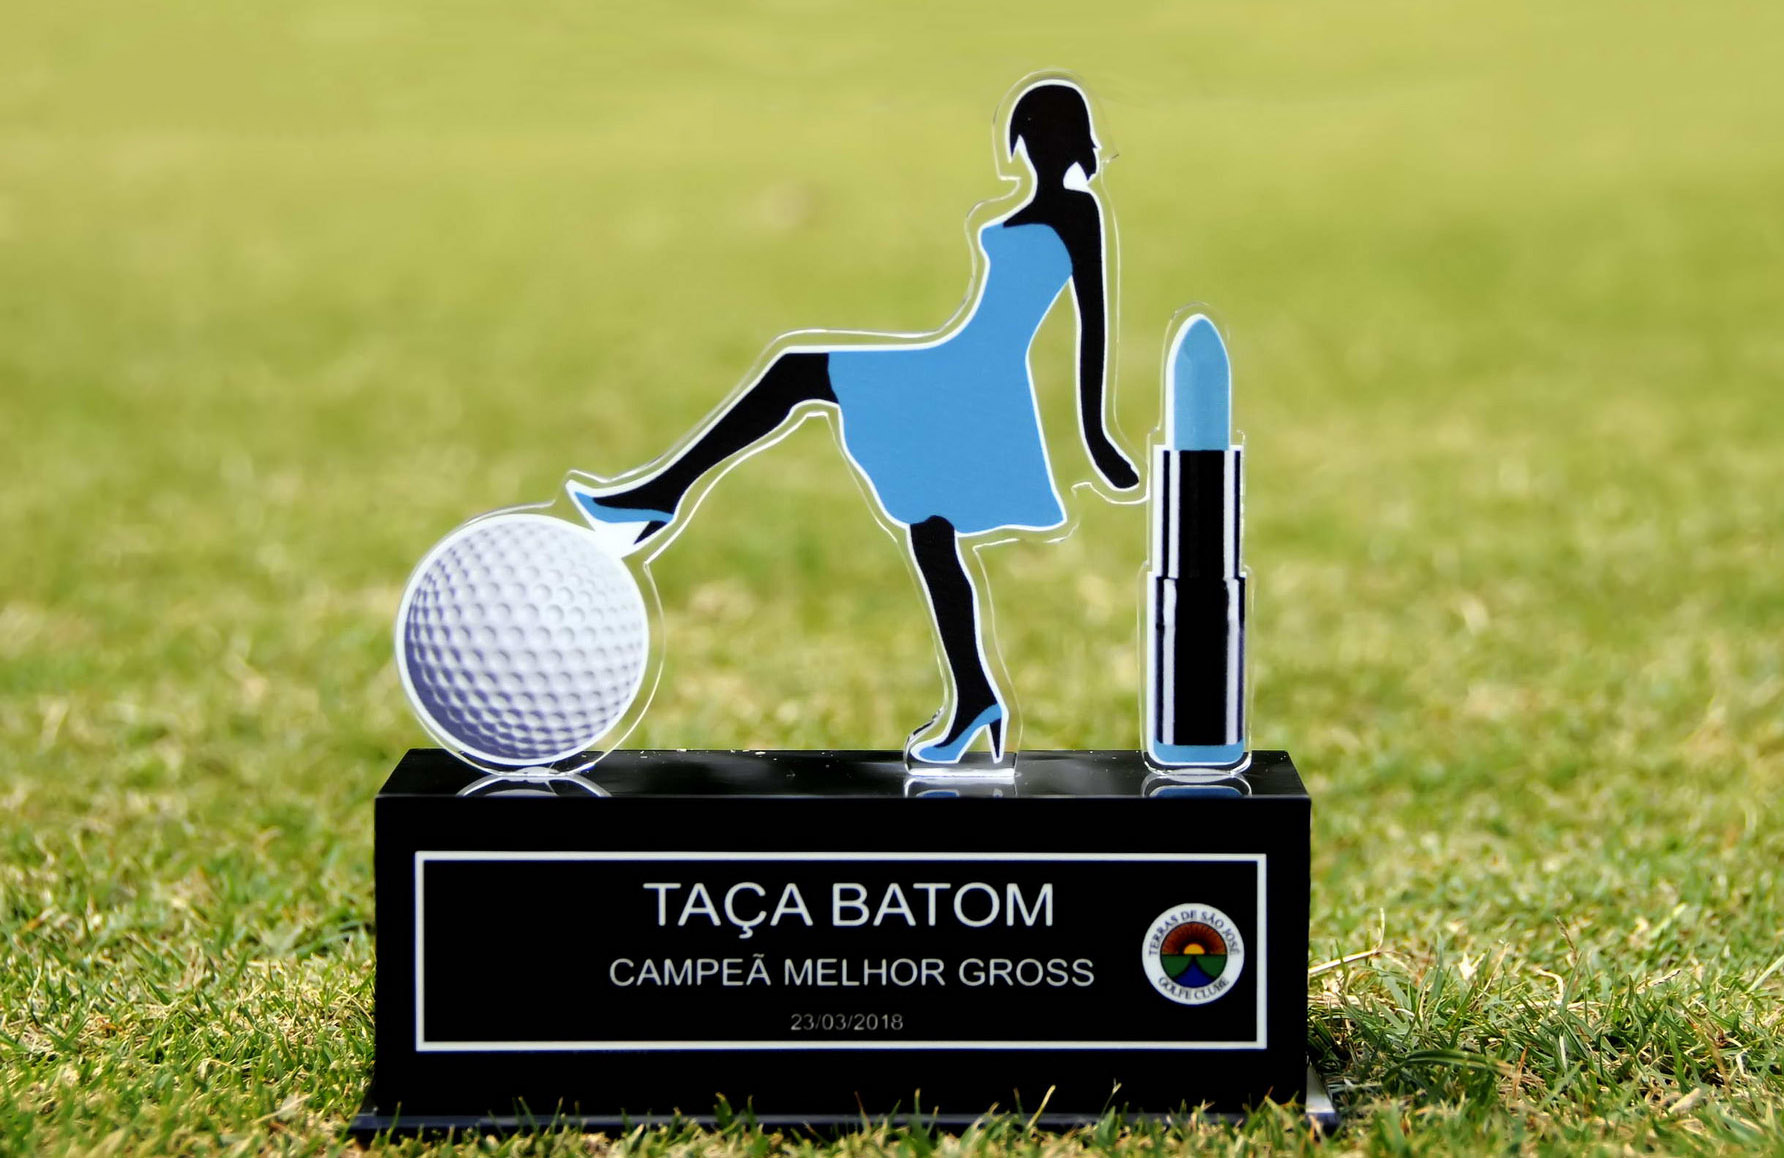 Abertas as inscrições para a Taça Batom 2018, dia 23 de março, no Terras de São José